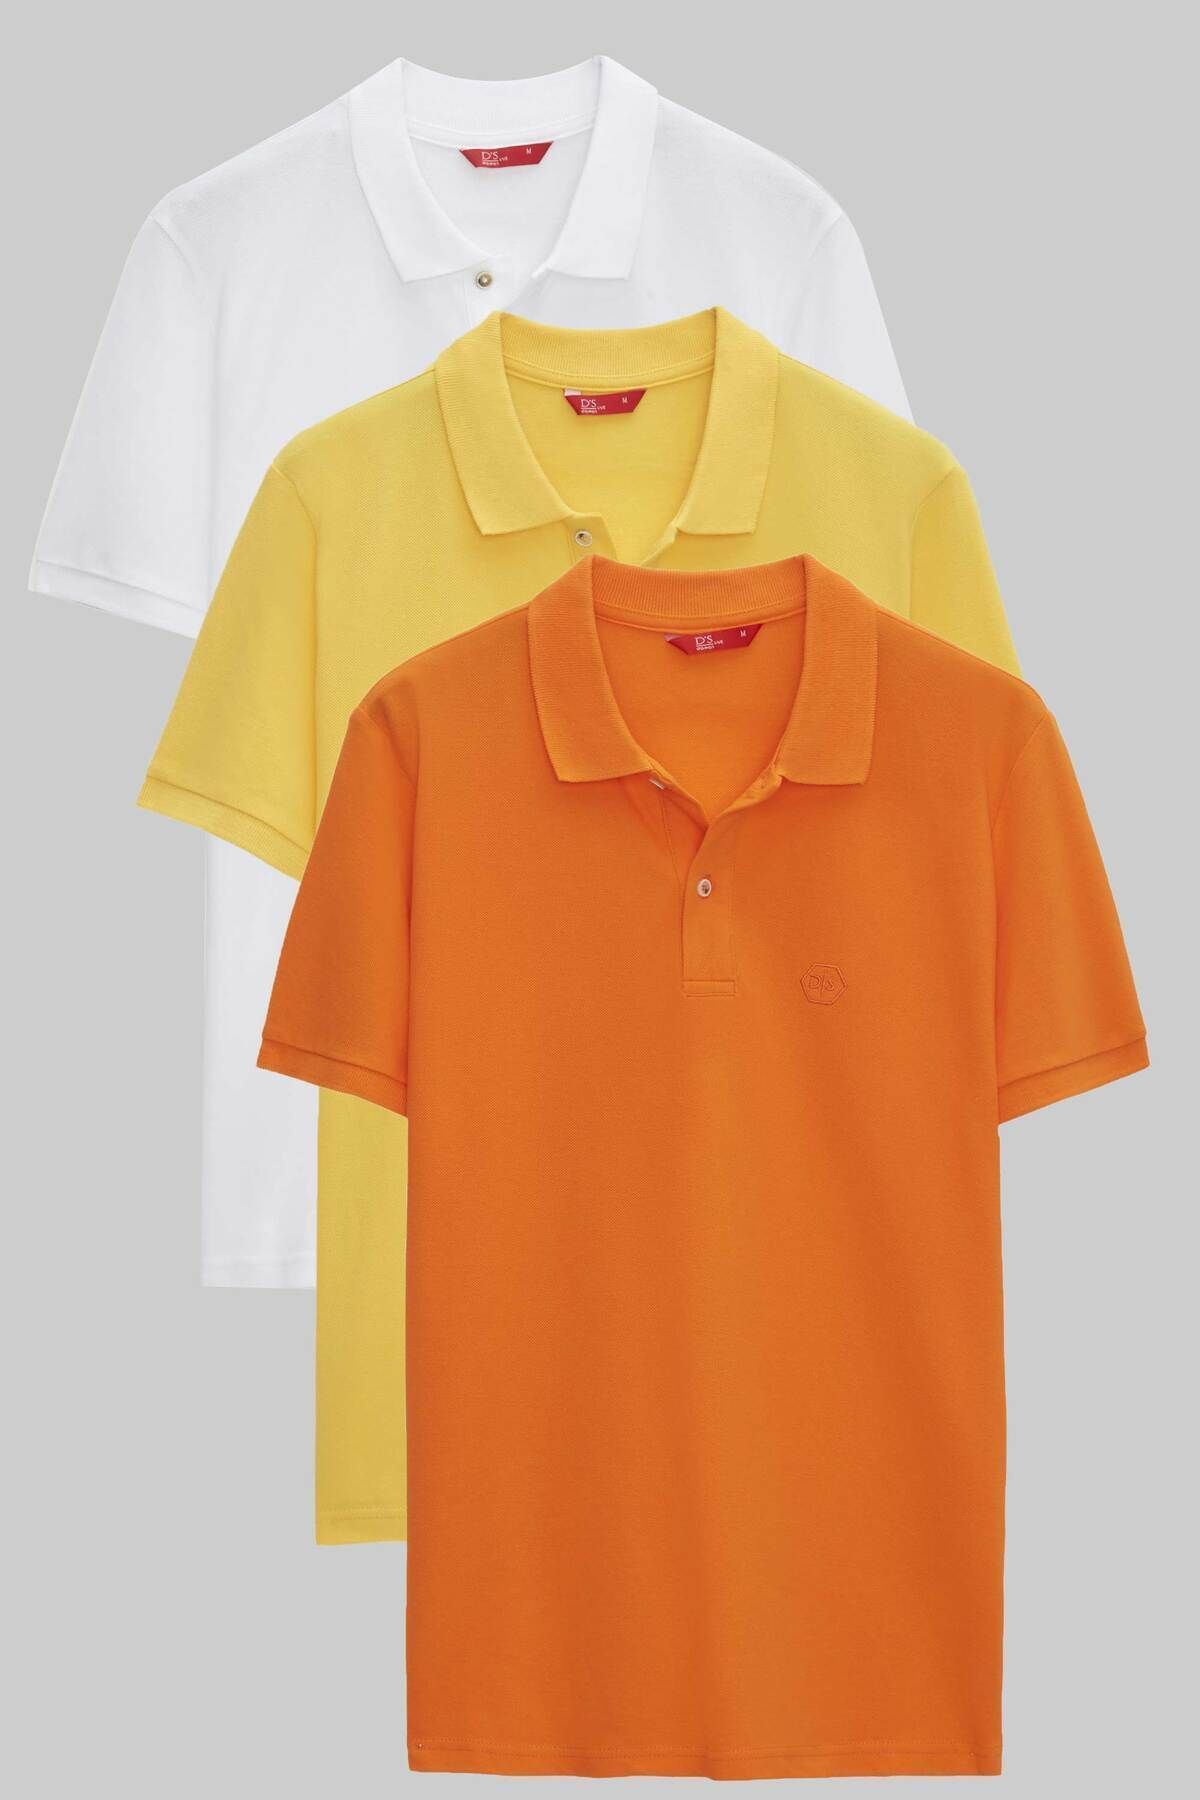 D'S Damat Regular Fit Beyaz/sari/turuncu Pike Dokulu %100 Pamuk Polo Yaka T-shirt